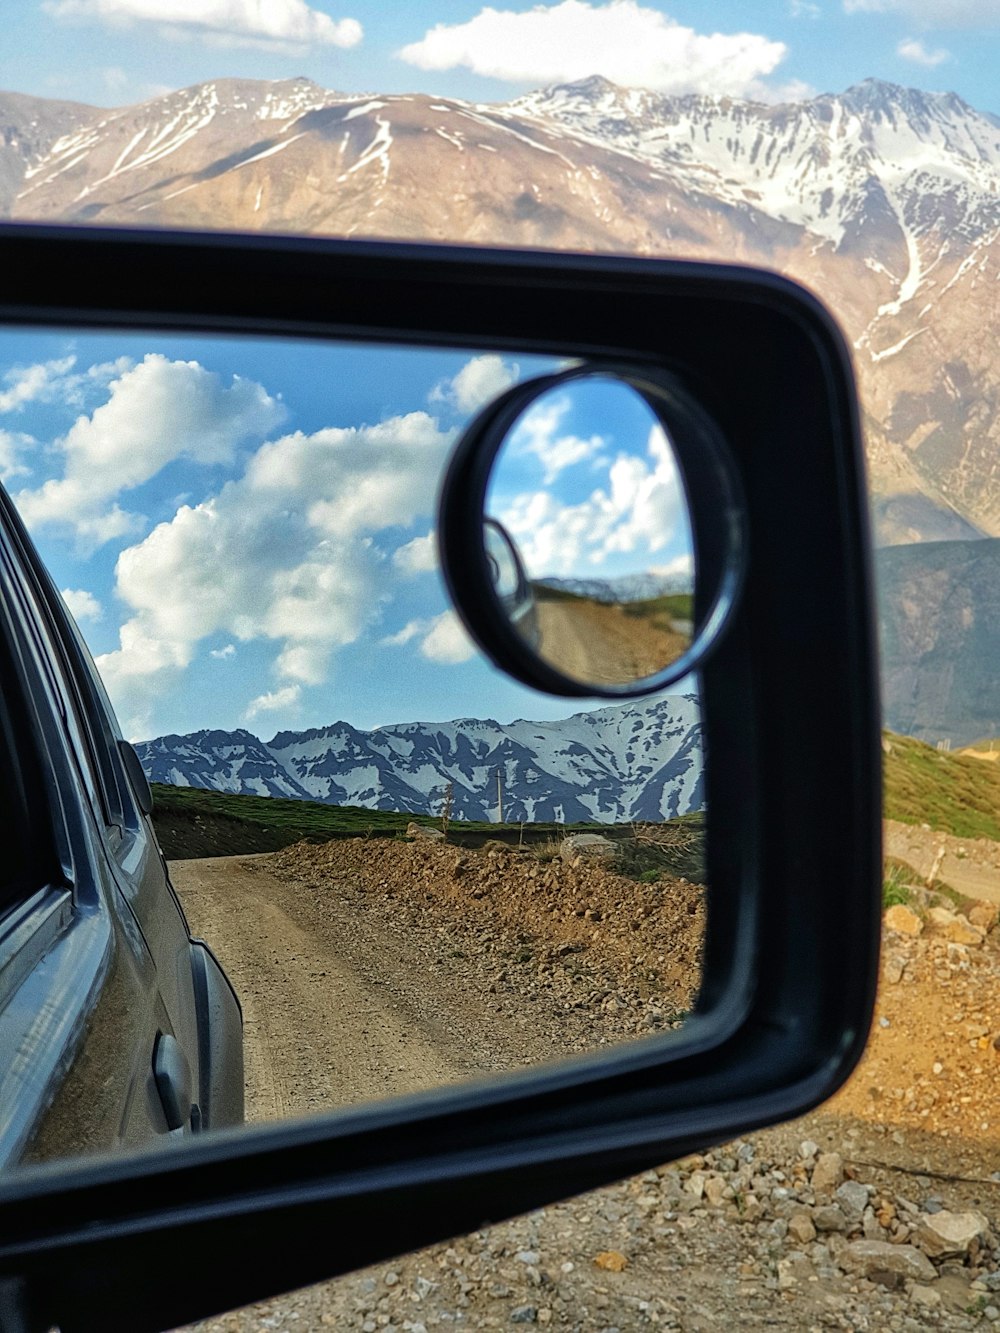 espelho lateral do carro mostrando o carro na estrada durante o dia